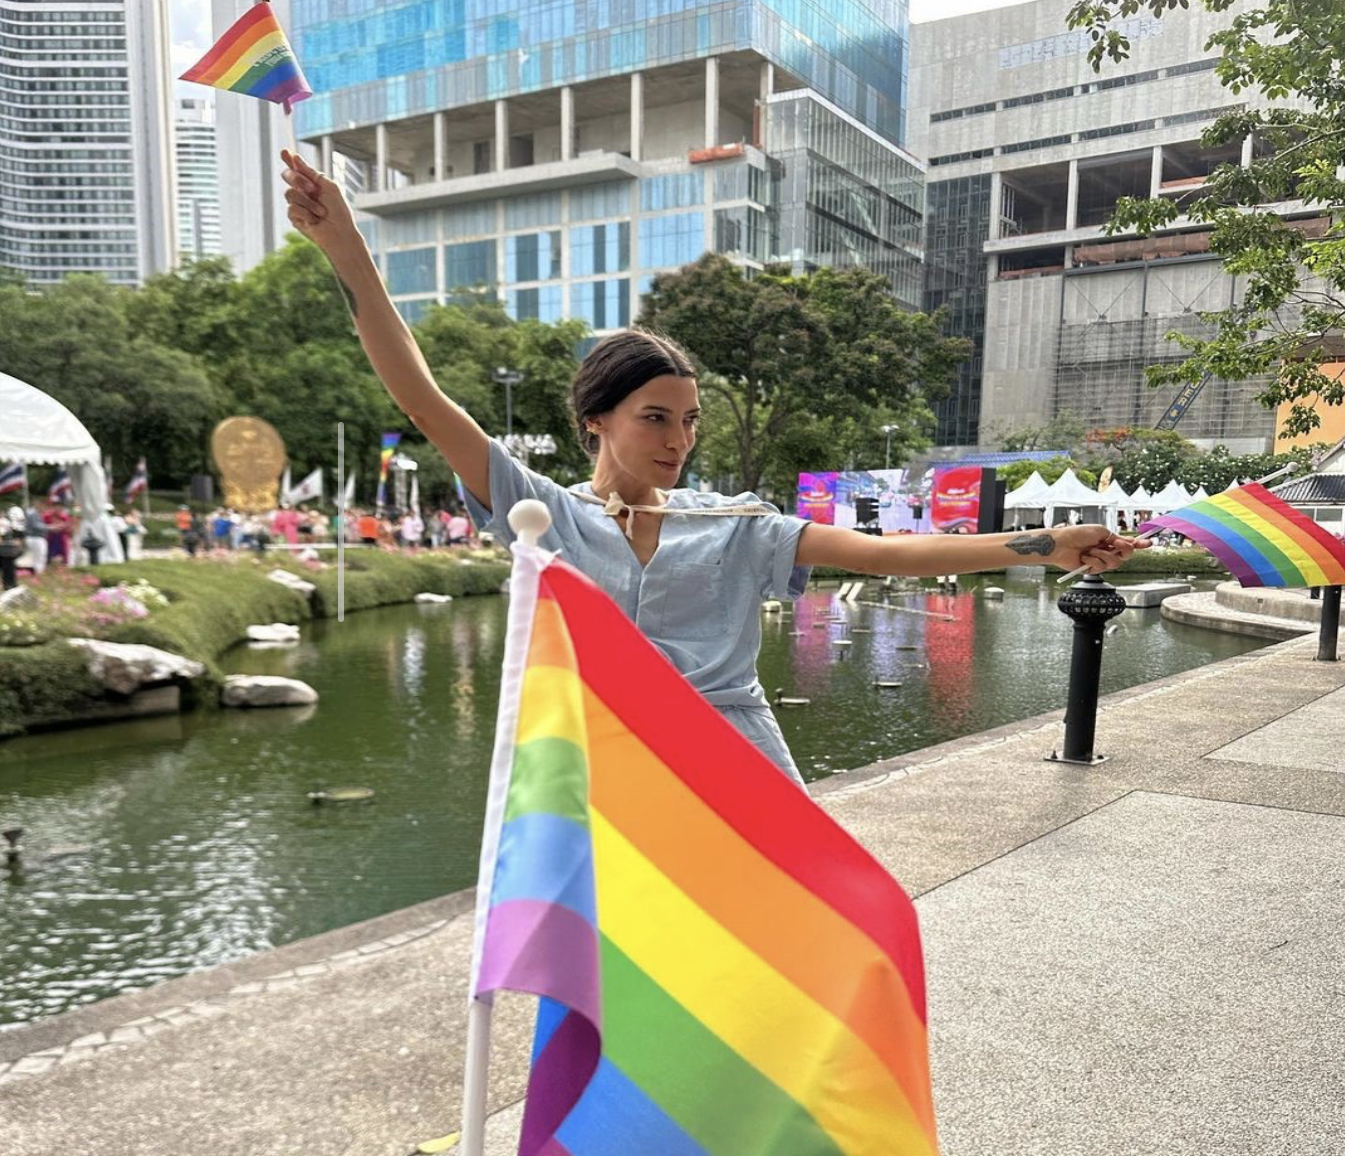 Silvia levantando uma bandeira LGBT